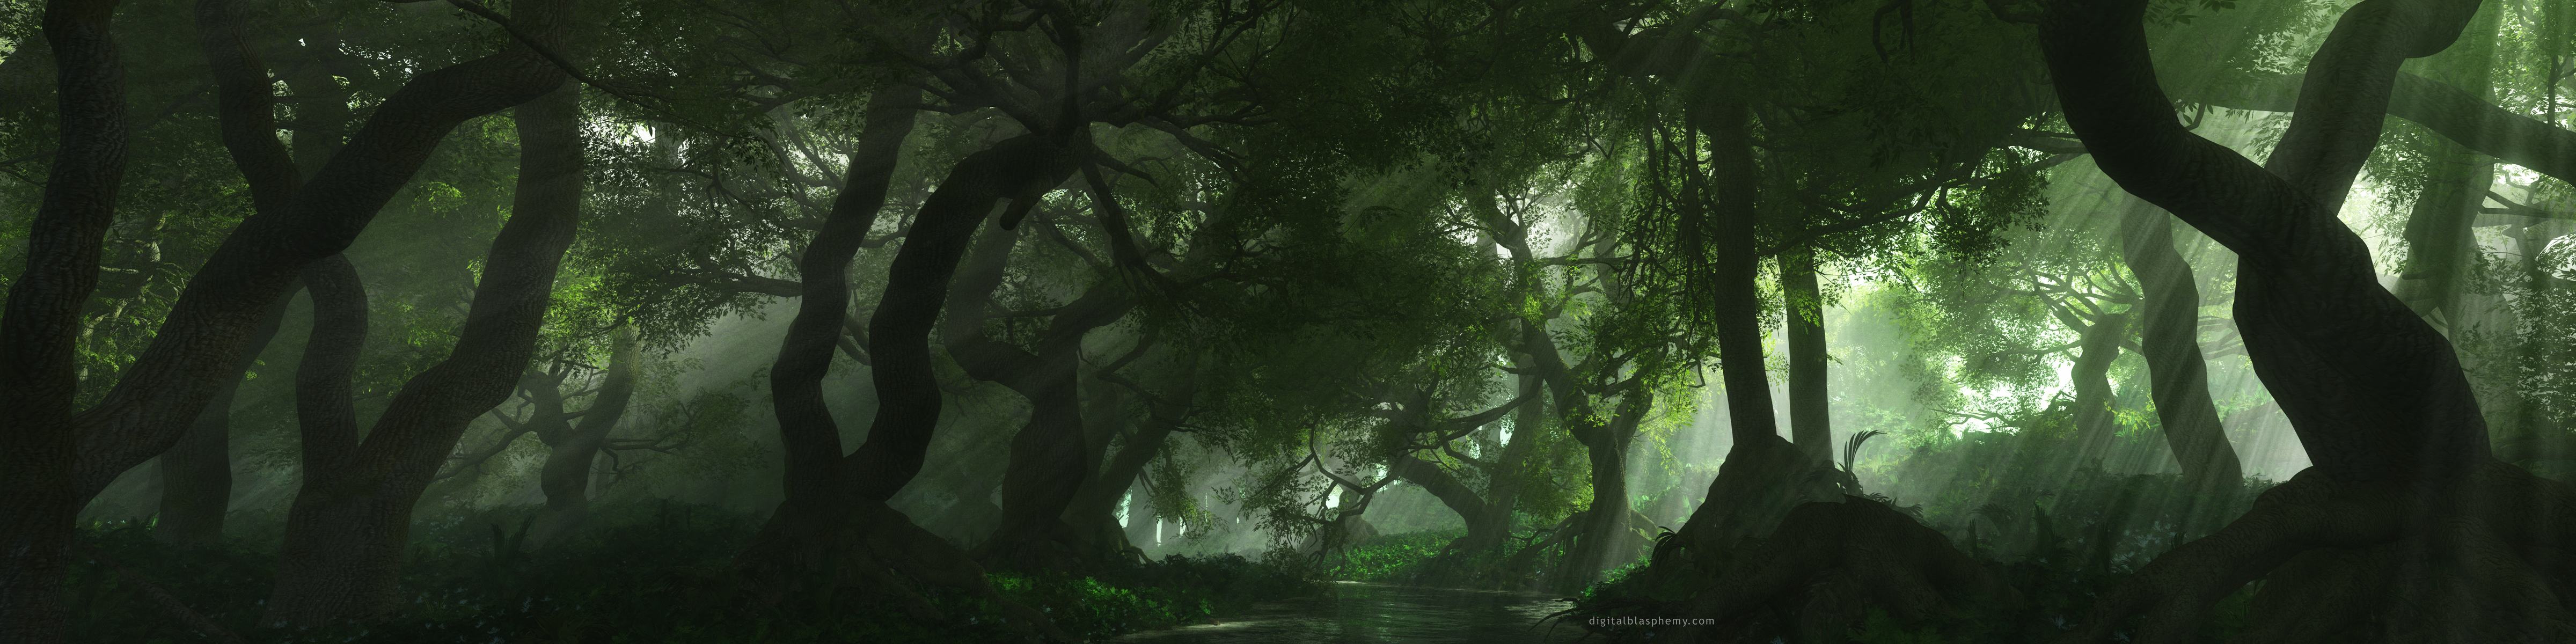 Страшный лес панорама